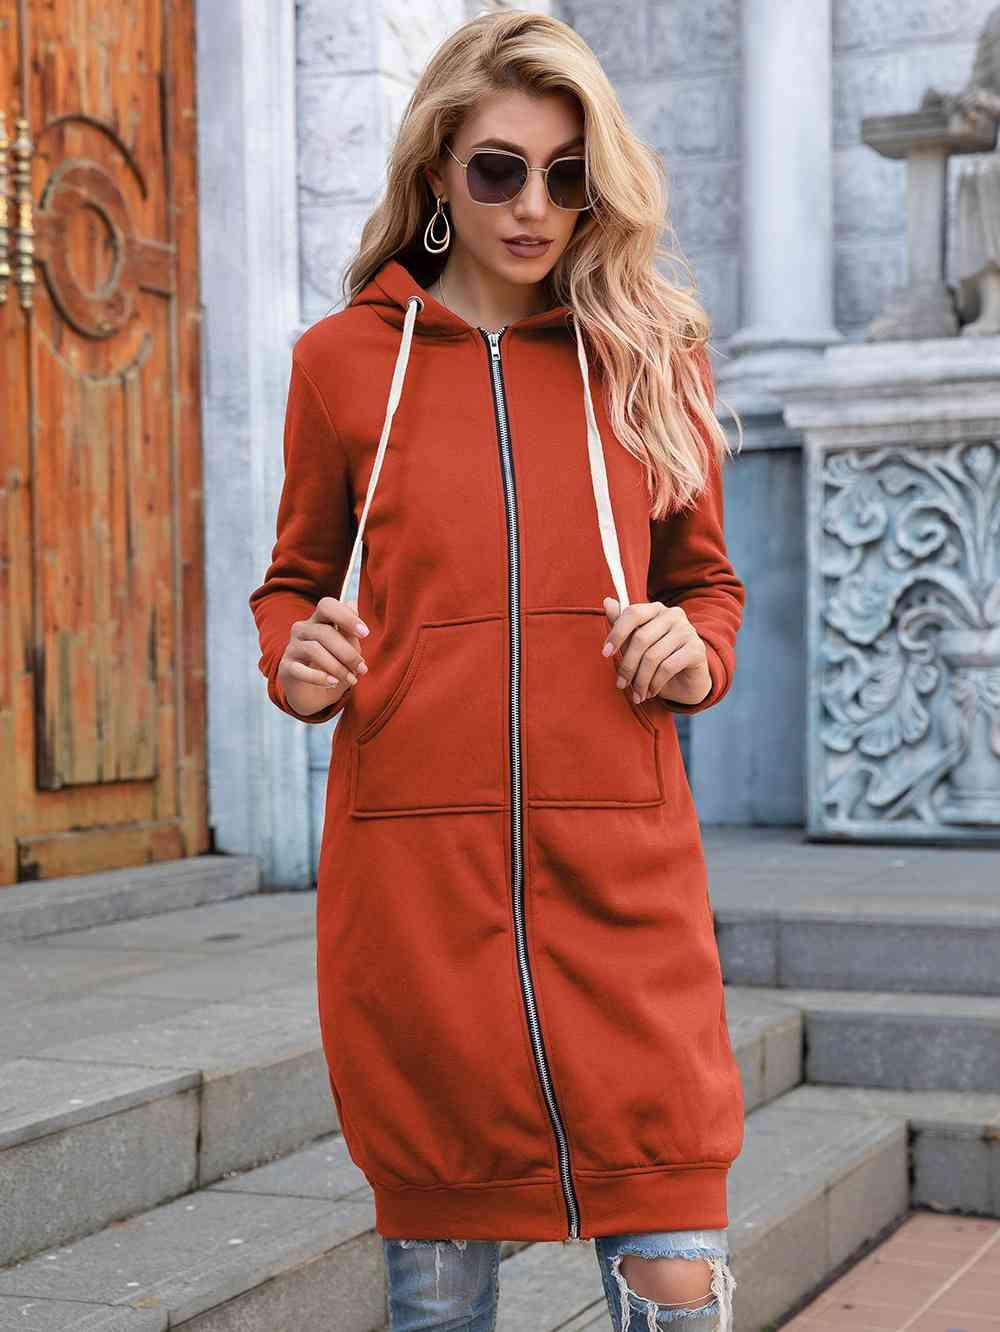 Bona Fide Fashion - Full Size Zip-Up Longline Hoodie with Pockets - Women Fashion - Bona Fide Fashion